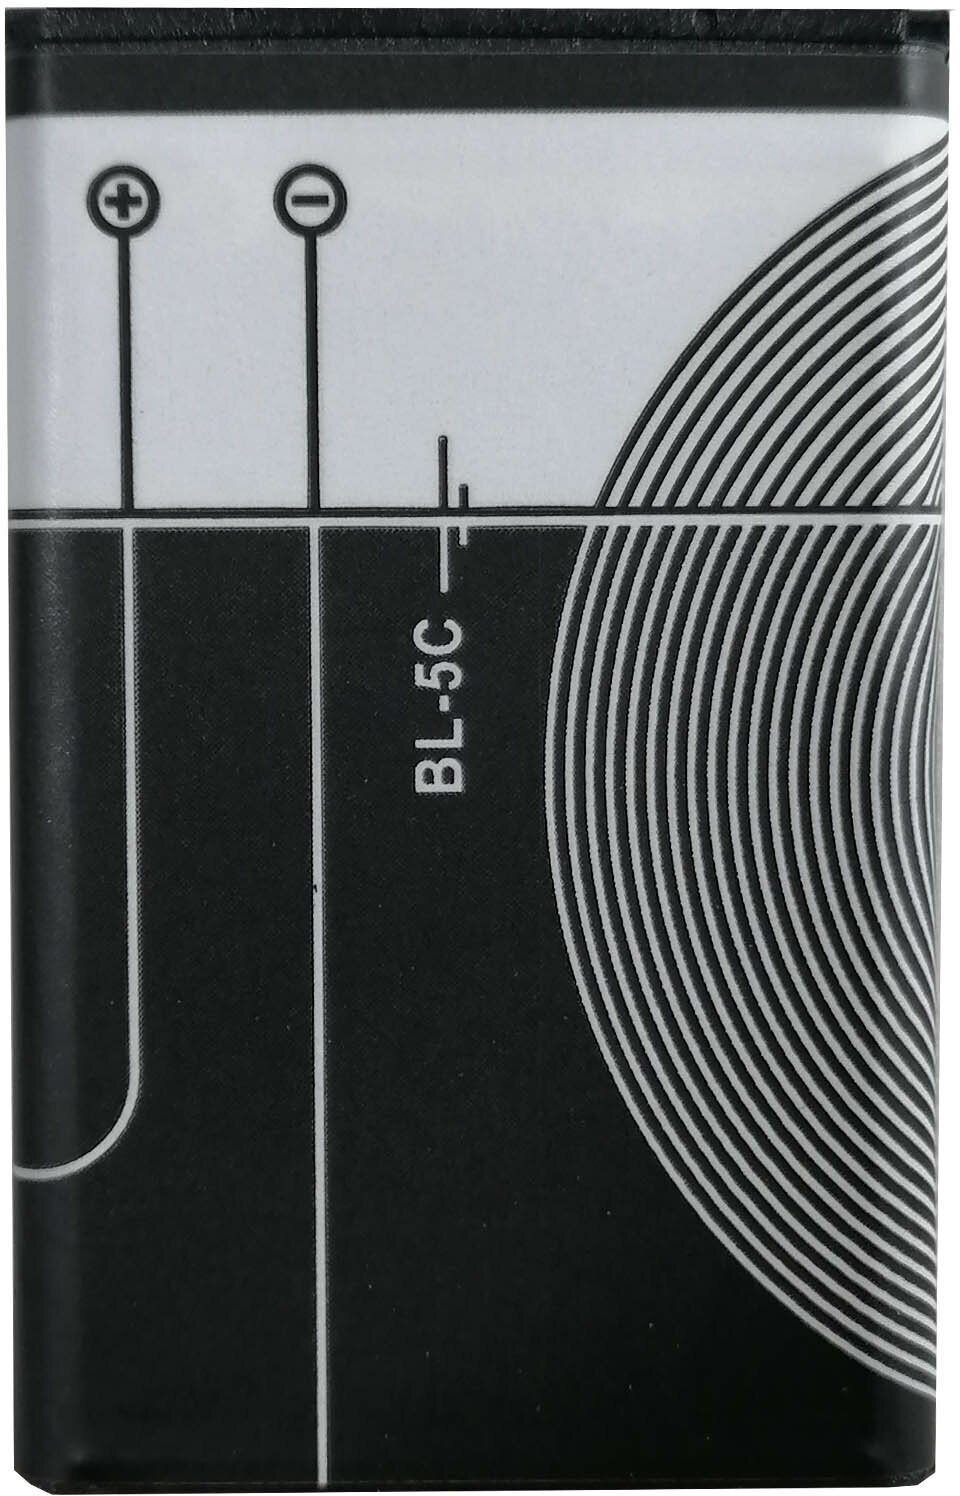 Радиоприемник портативный Сигнал РП-221 черный USB microSD